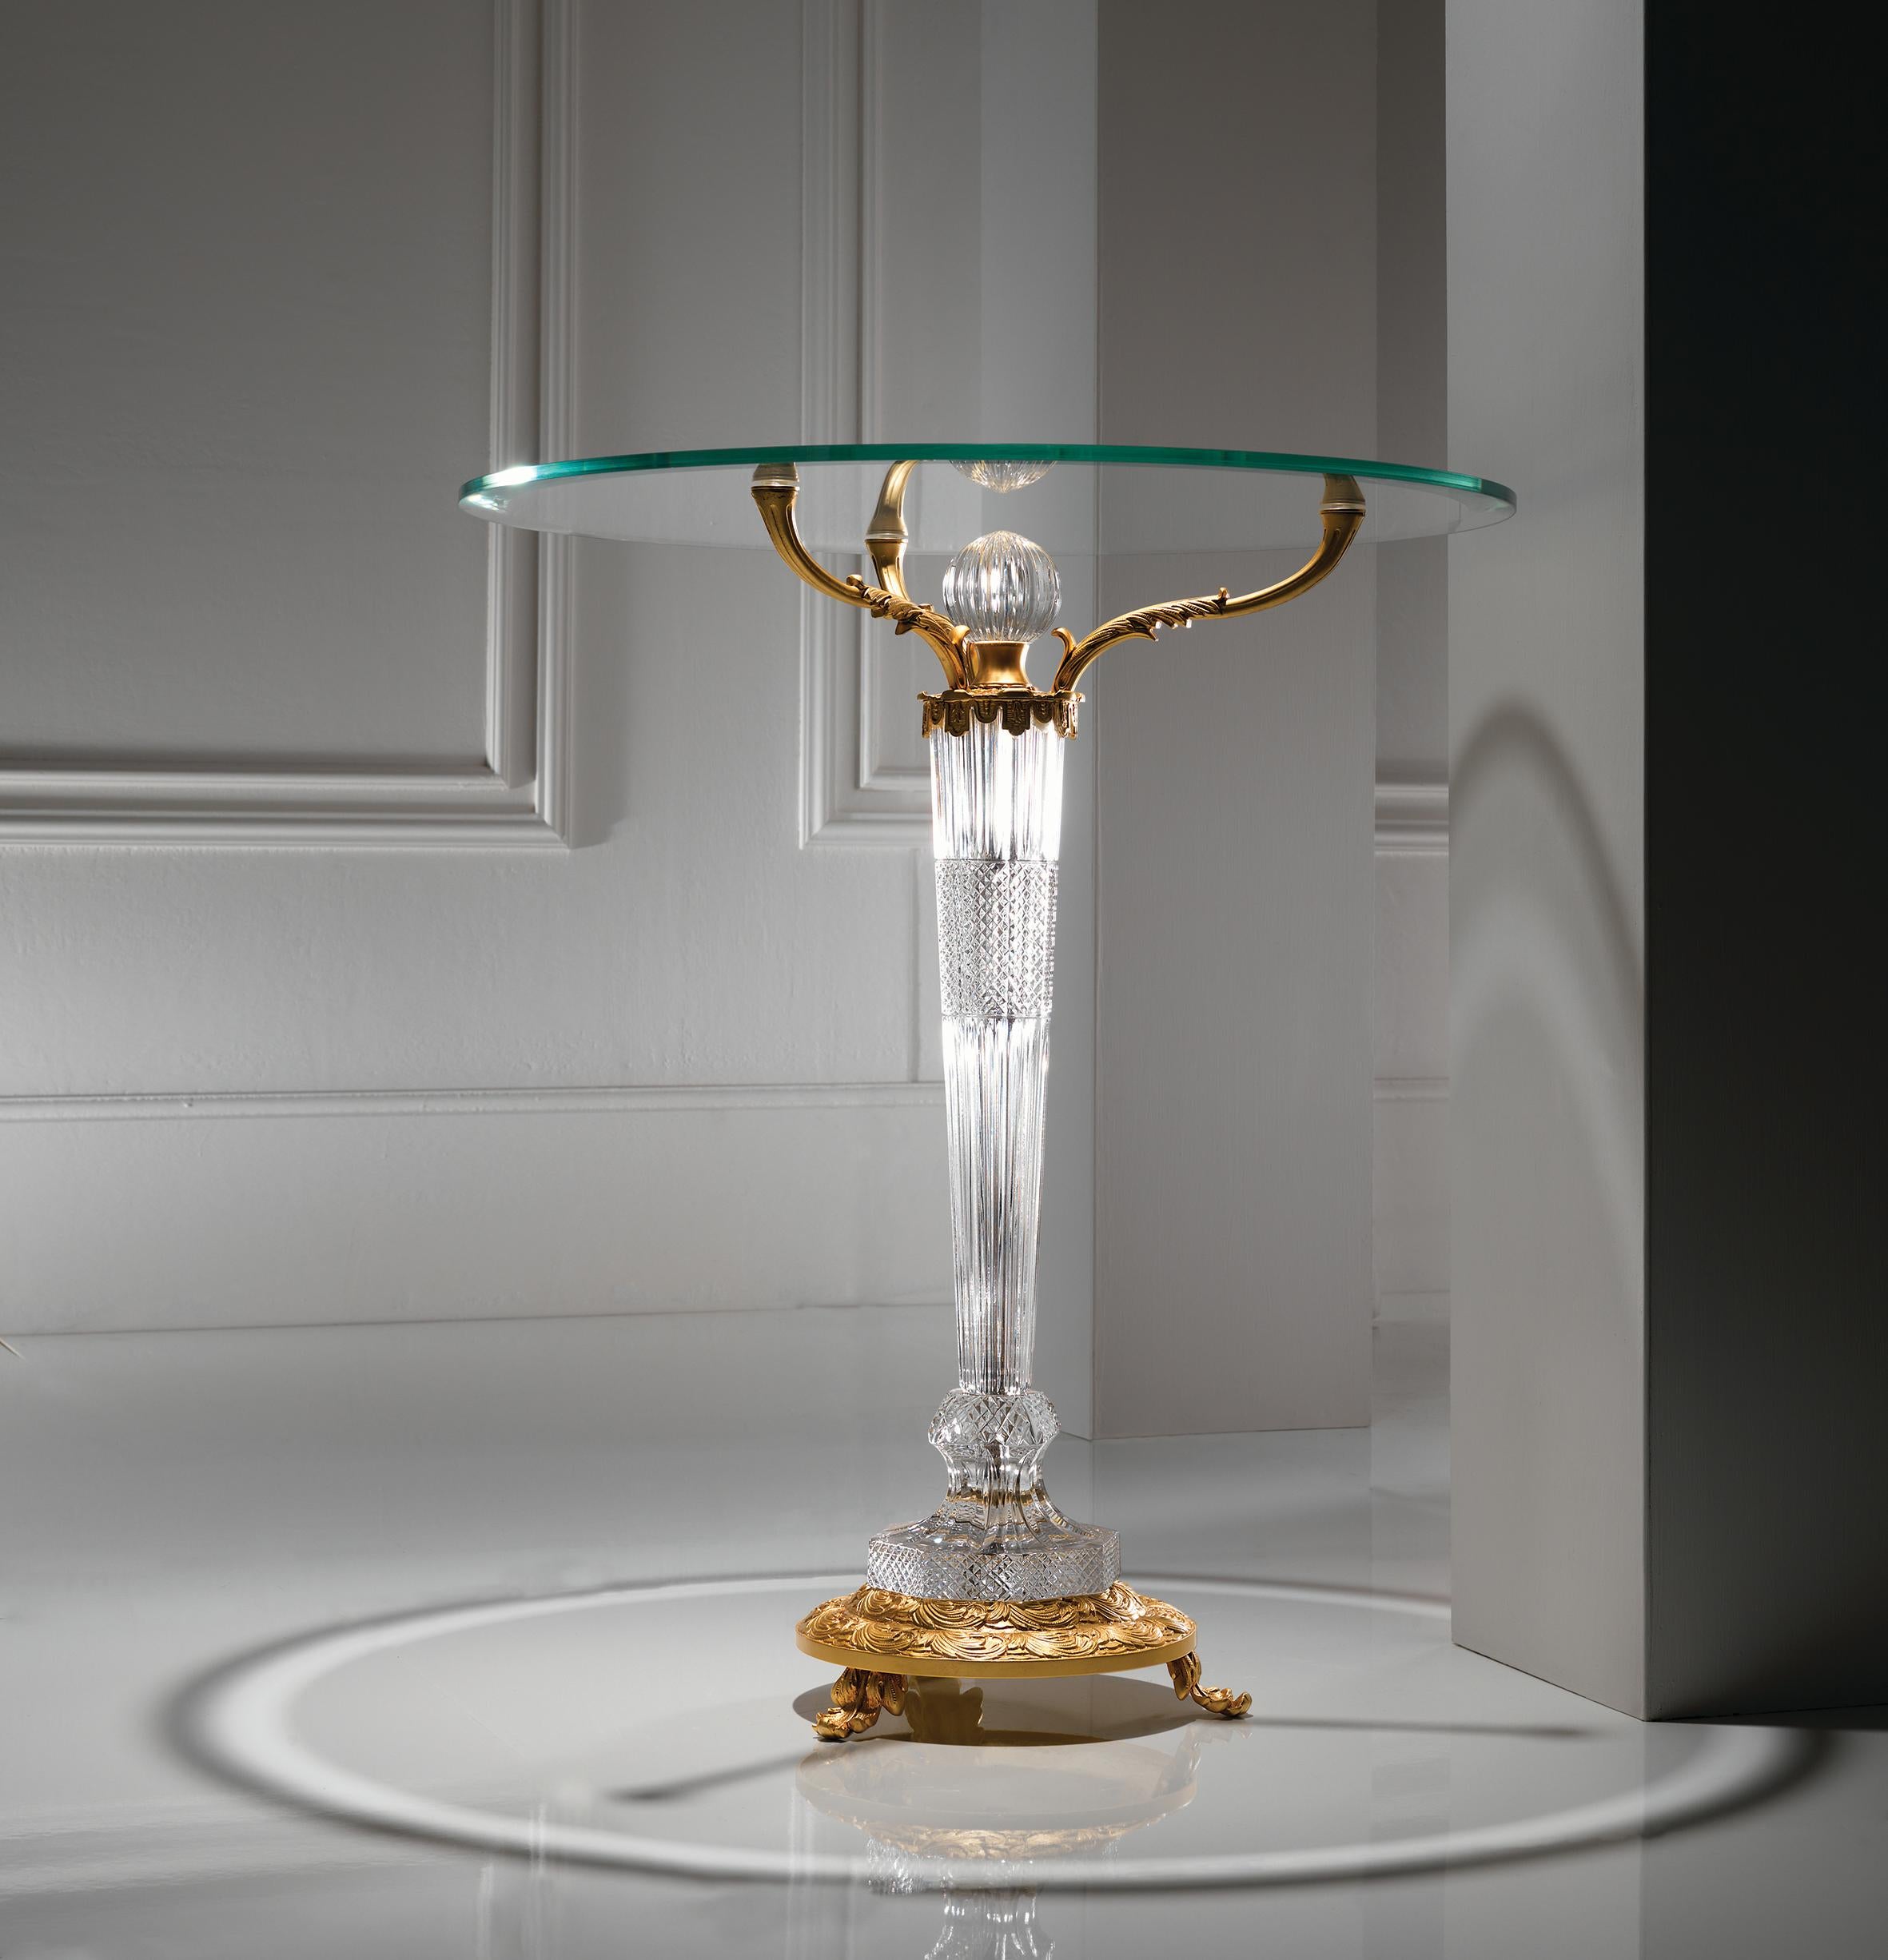 Table d'appoint en cristal clair et bronze doré français avec un pied et un plateau en verre trempé. Les pièces en cristal sont sculptées à la main. Chaque objet est fabriqué à la main et le soin apporté à chaque détail rend chaque objet unique en